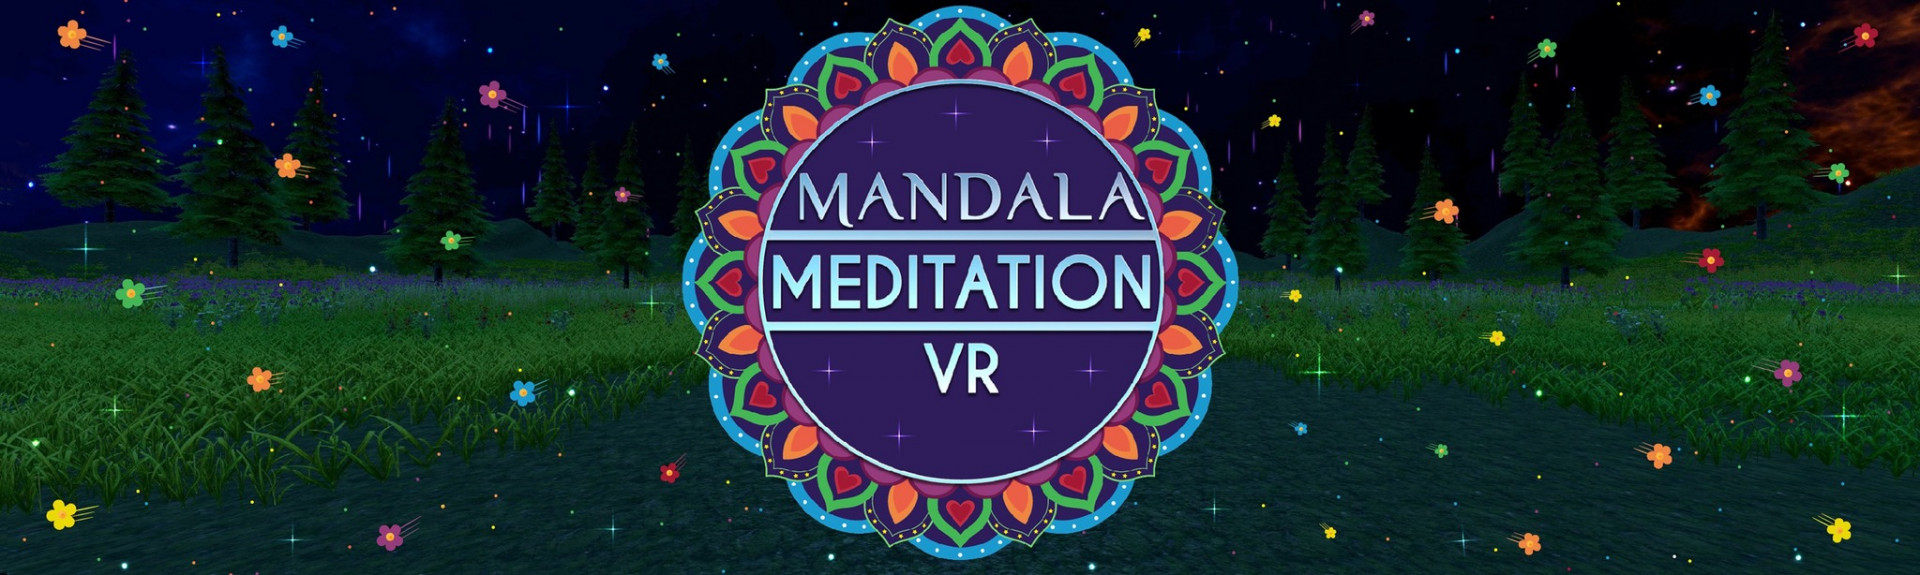 Mandala Meditation VR